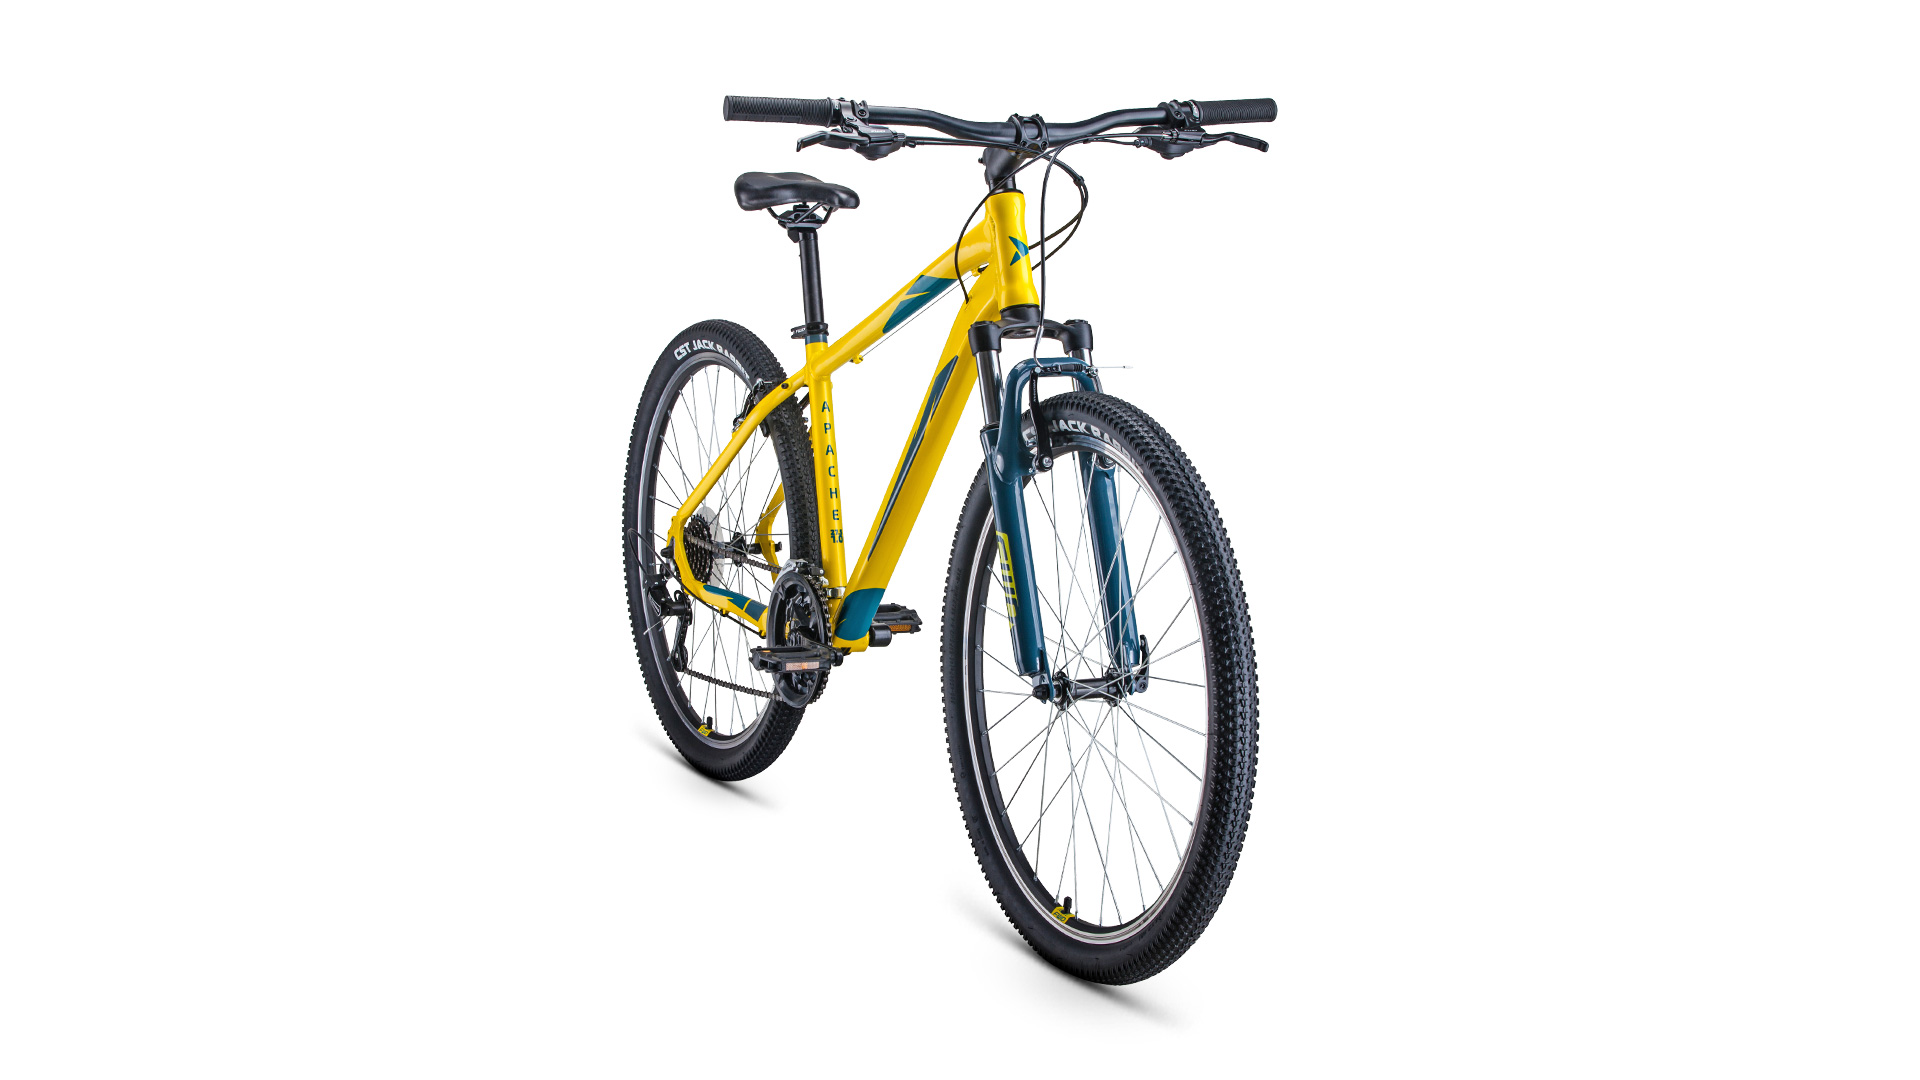 Горный велосипед Forward Apache 27.5 1.0, год 2021, цвет Желтый-Зеленый, ростовка 19